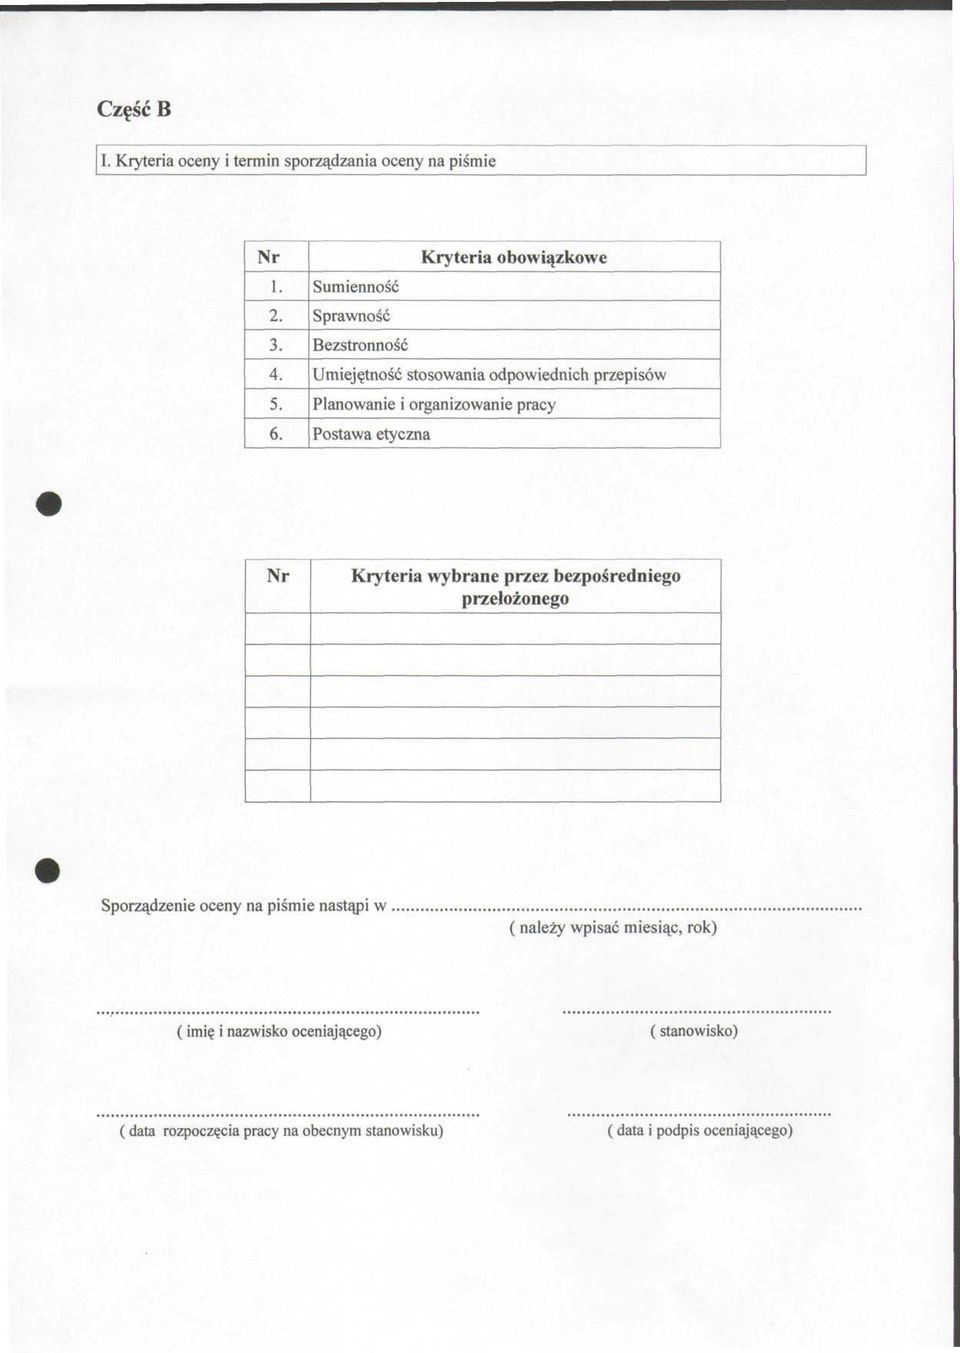 organizowanie pracy Postawa etyczna Nr Kryteria wybrane przez bezpośredniego przełożonego Sporządzenie oceny na piśmie